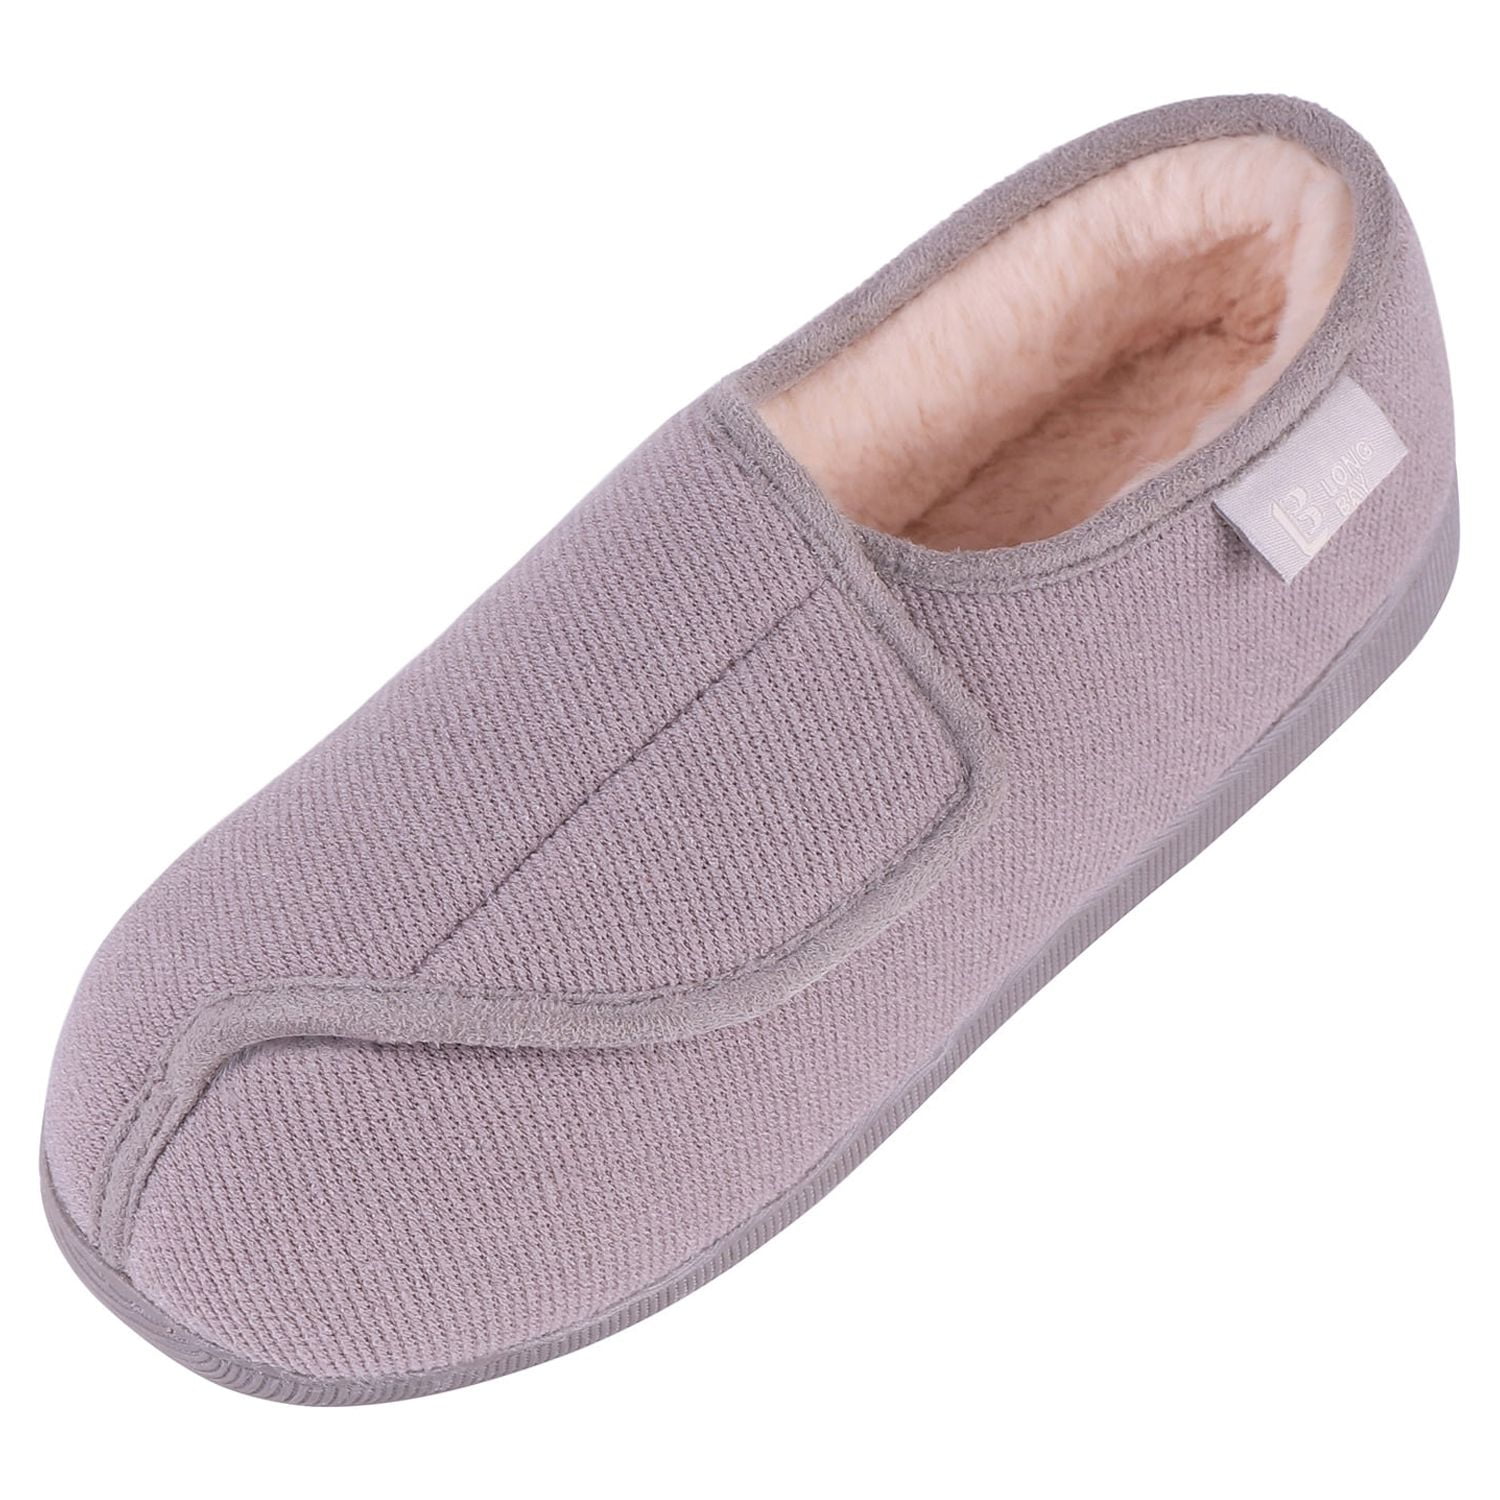 LongBay Women's Adjustable Diabetic Slippers Memory Foam Arthritis ...